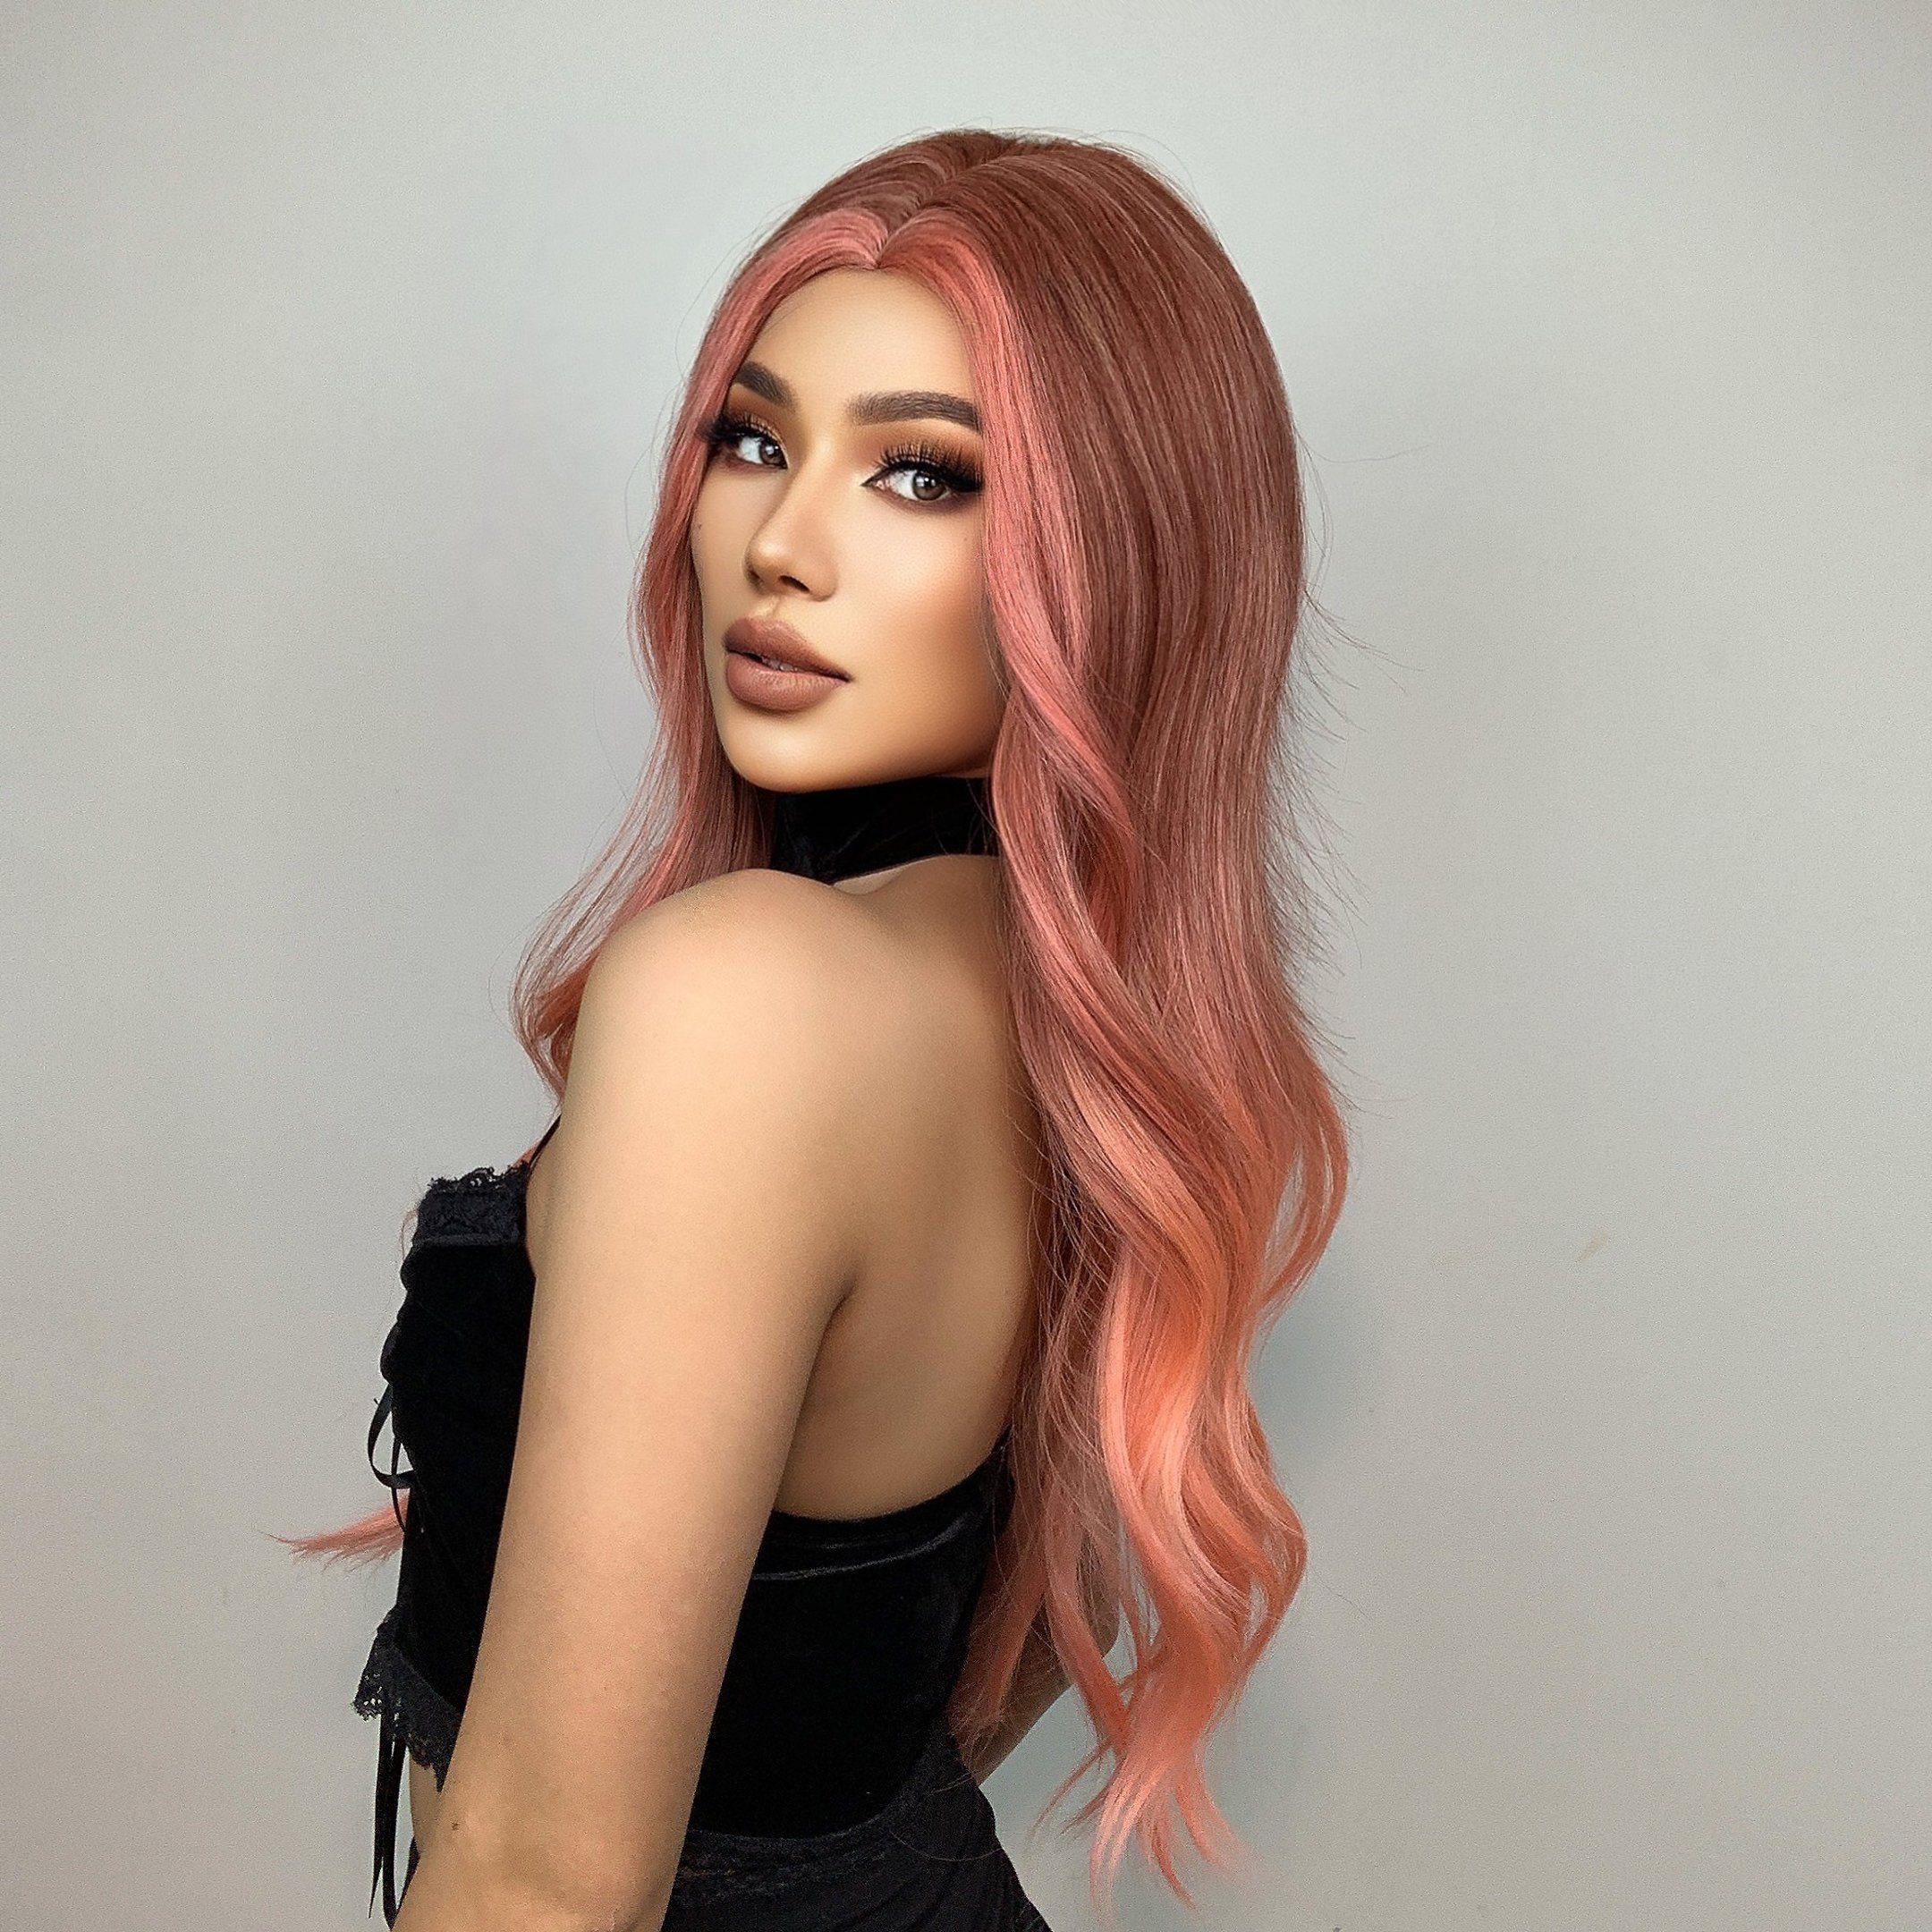 Püke Kunsthaarperücke Perücken, Orange-rosa Perücken 24inch lange gewellte Halloween Haar